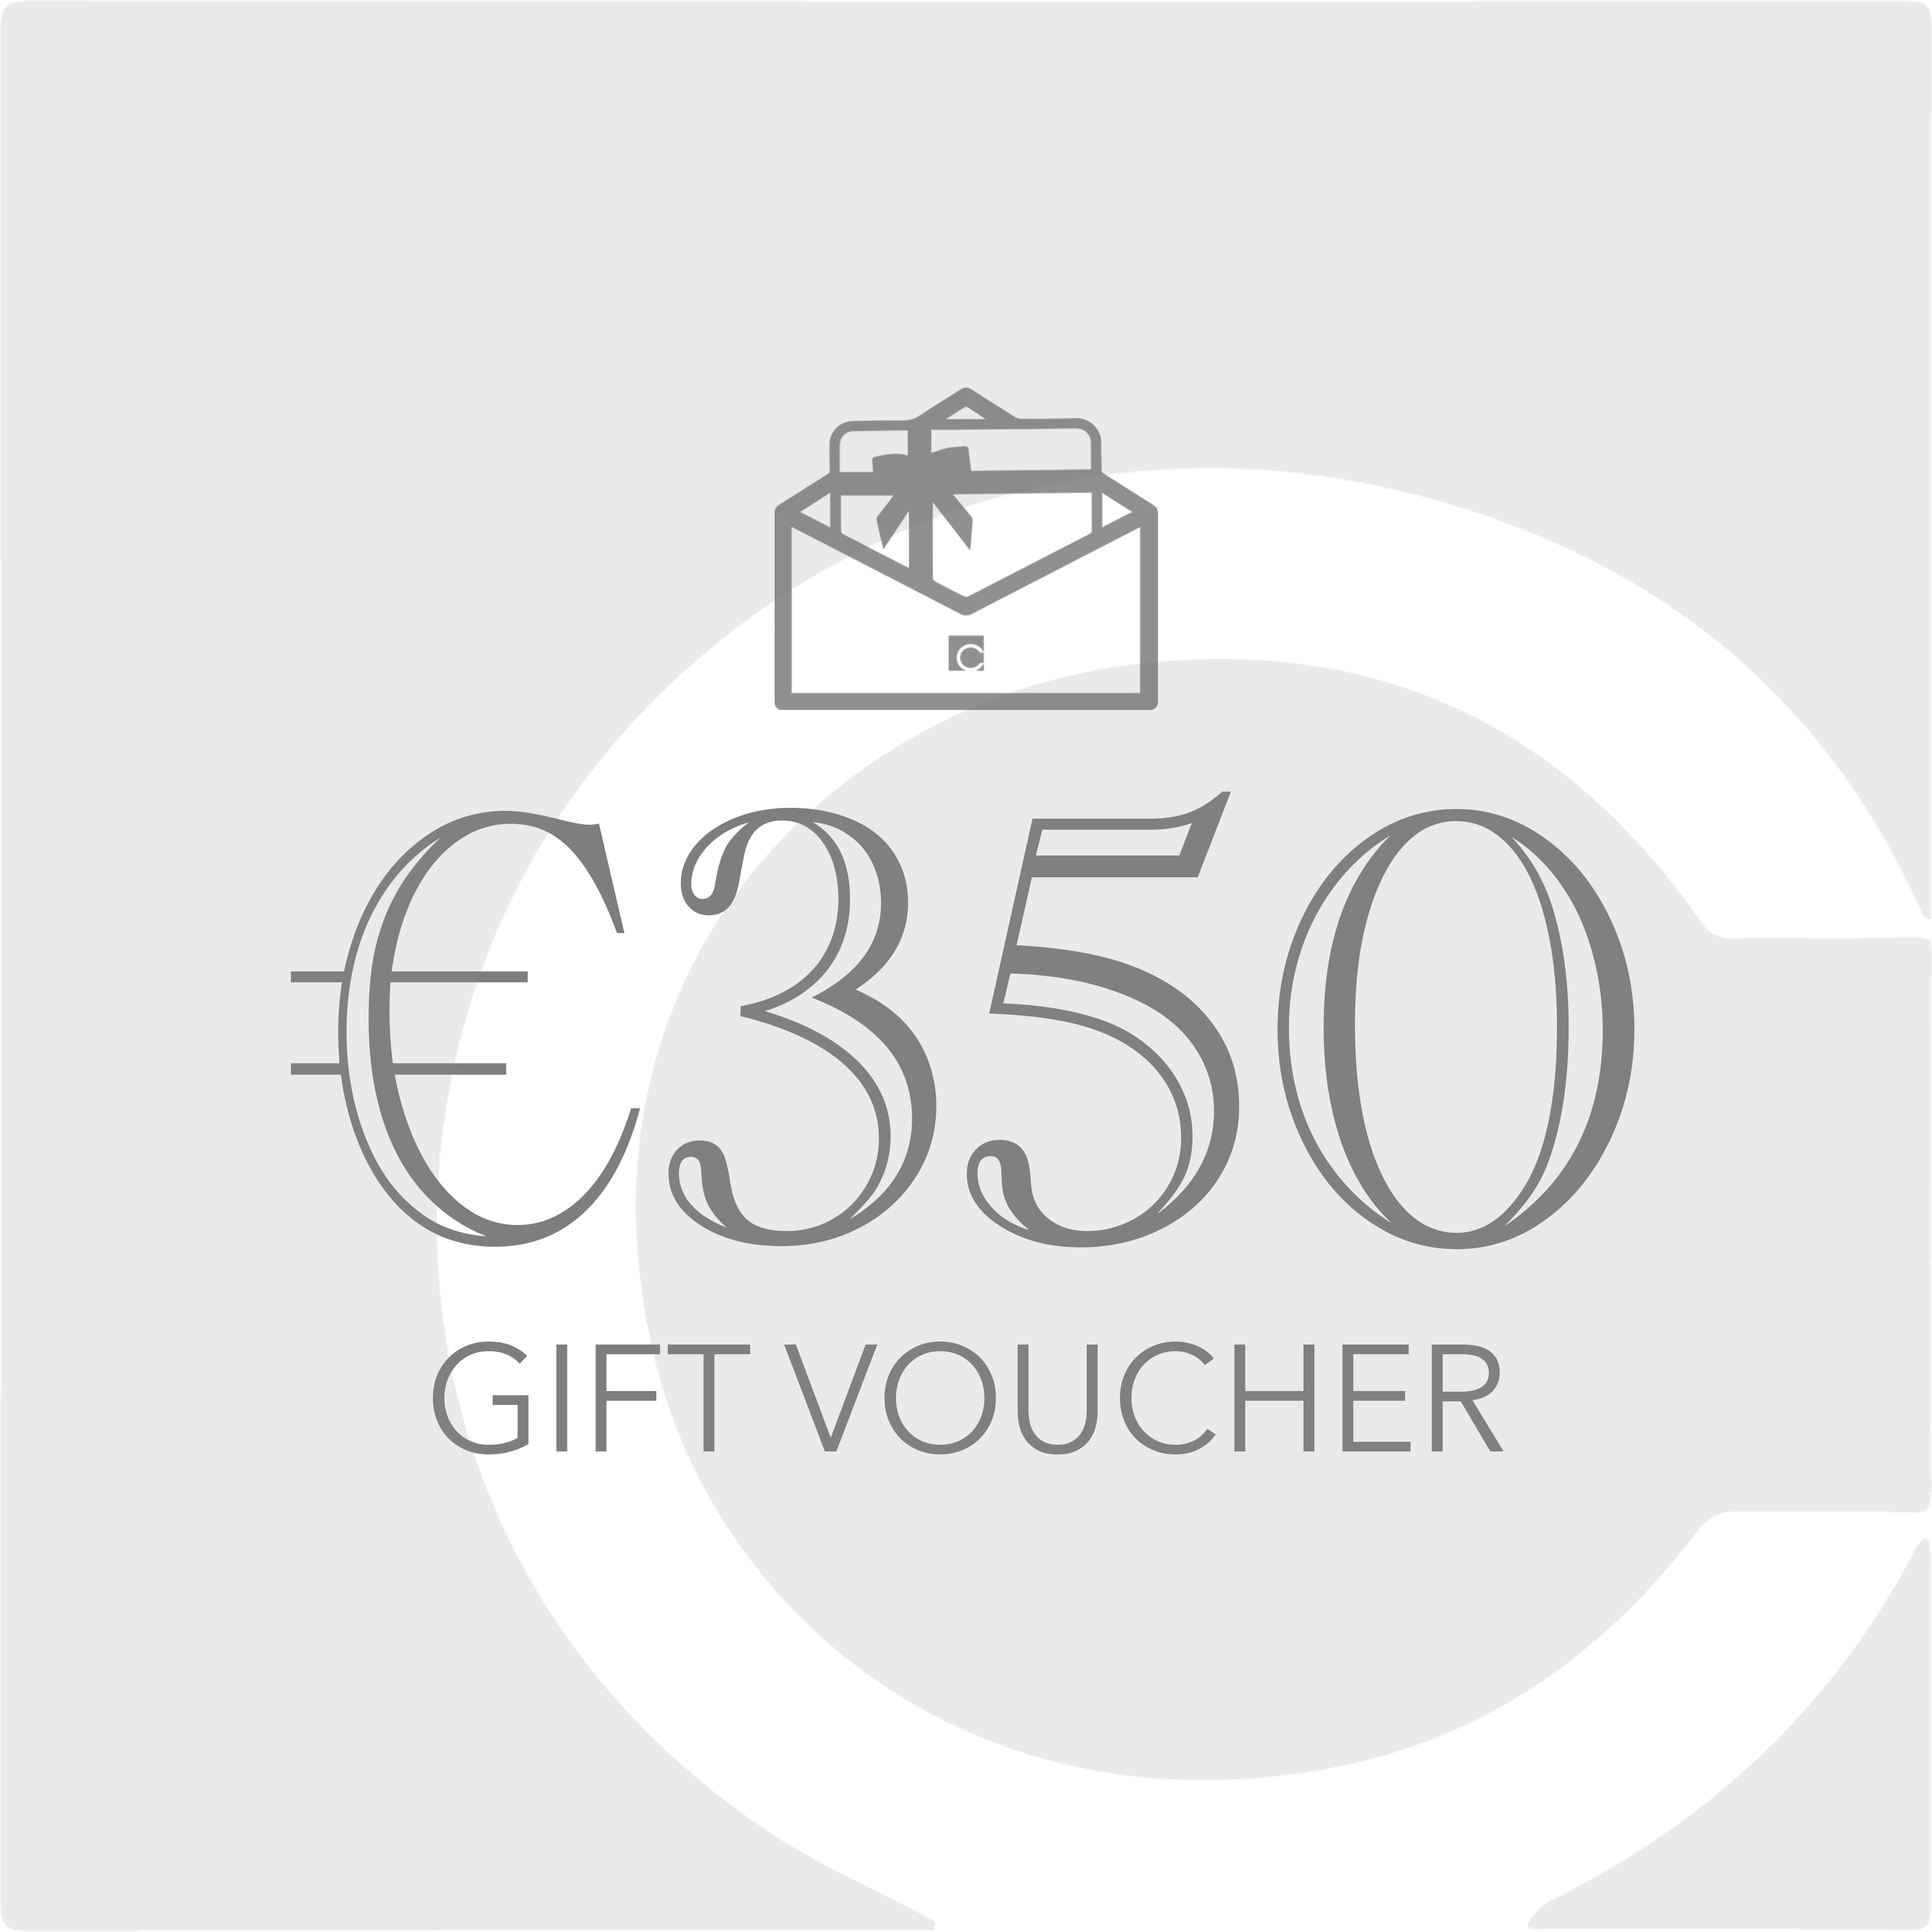 €350 Gift Voucher